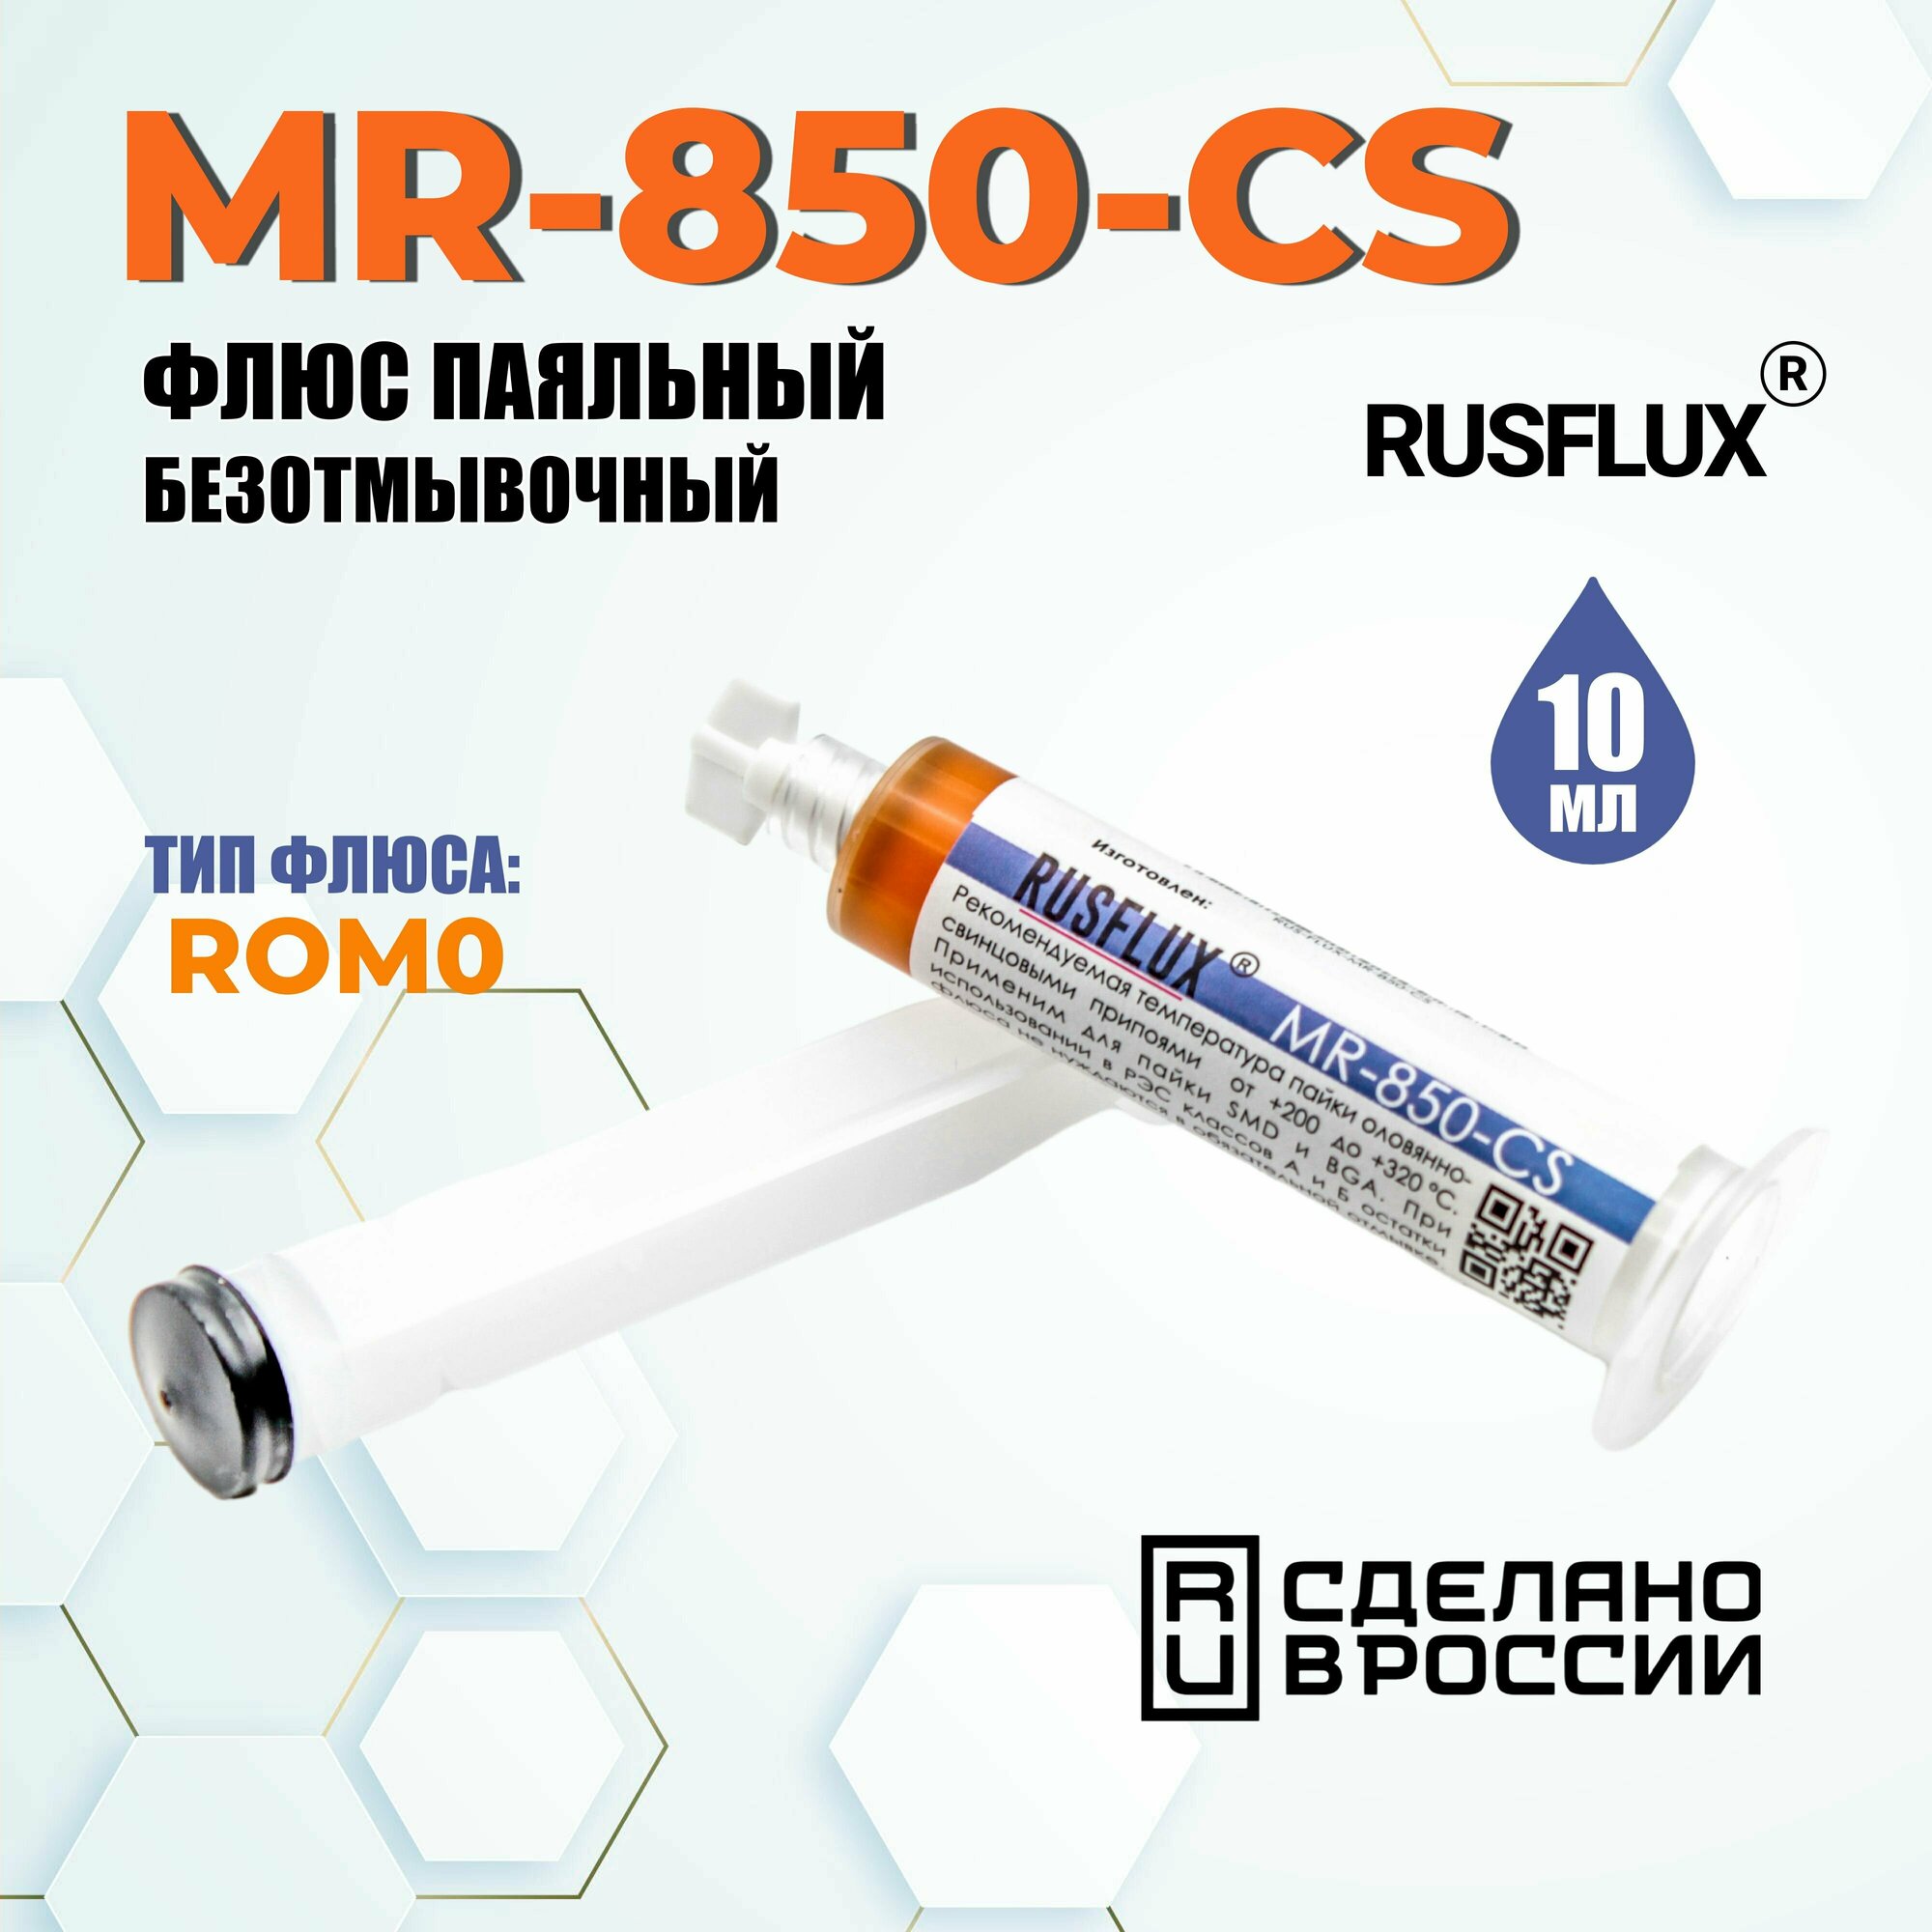 MR-850-CS Флюс CyberFlux (RUSFLUX) MR-850-CS безотмывочный универсальный 10мл